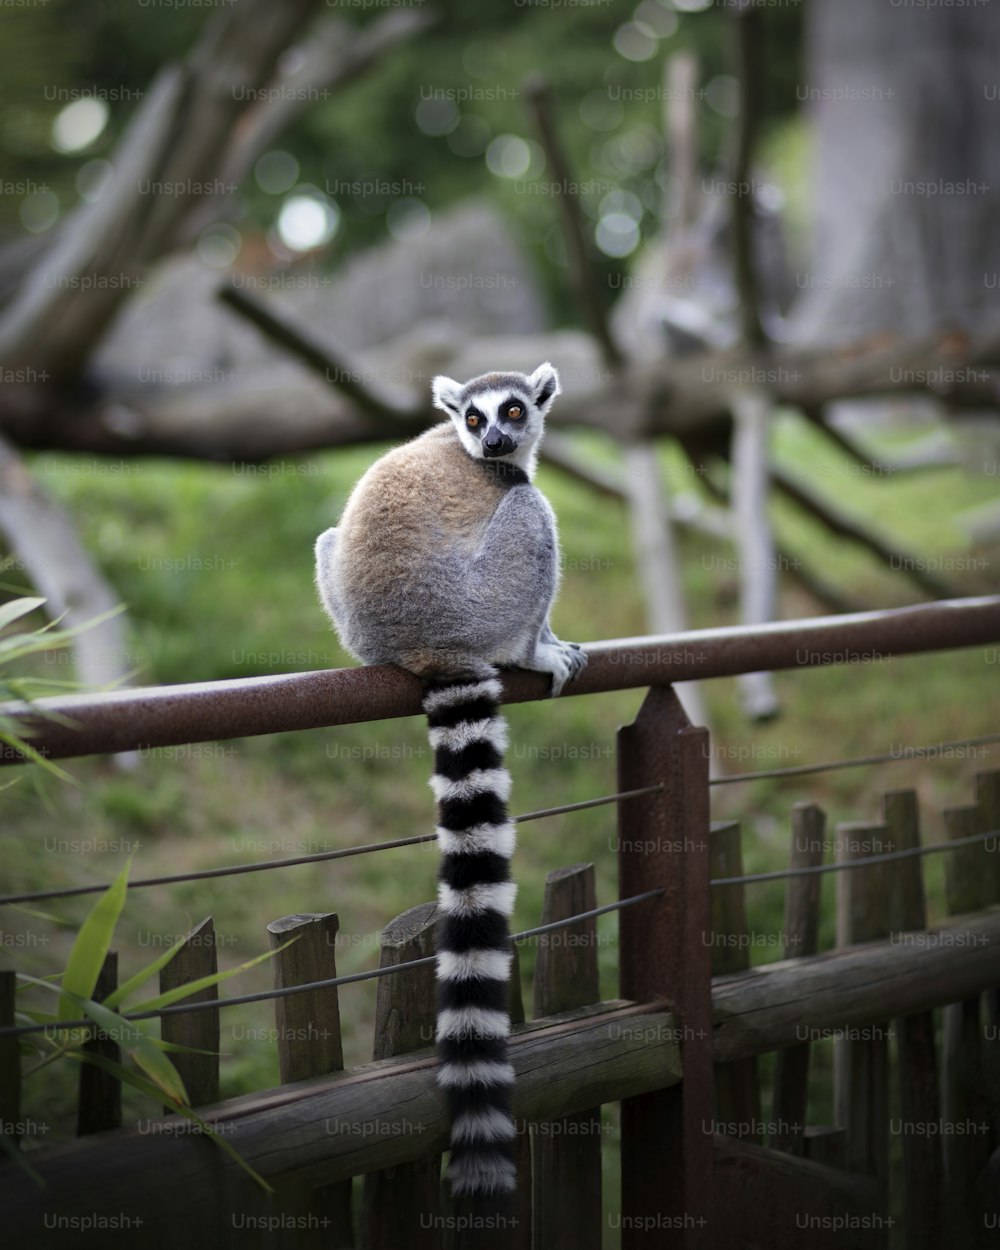 Un lemure seduto in cima a una staccionata di legno